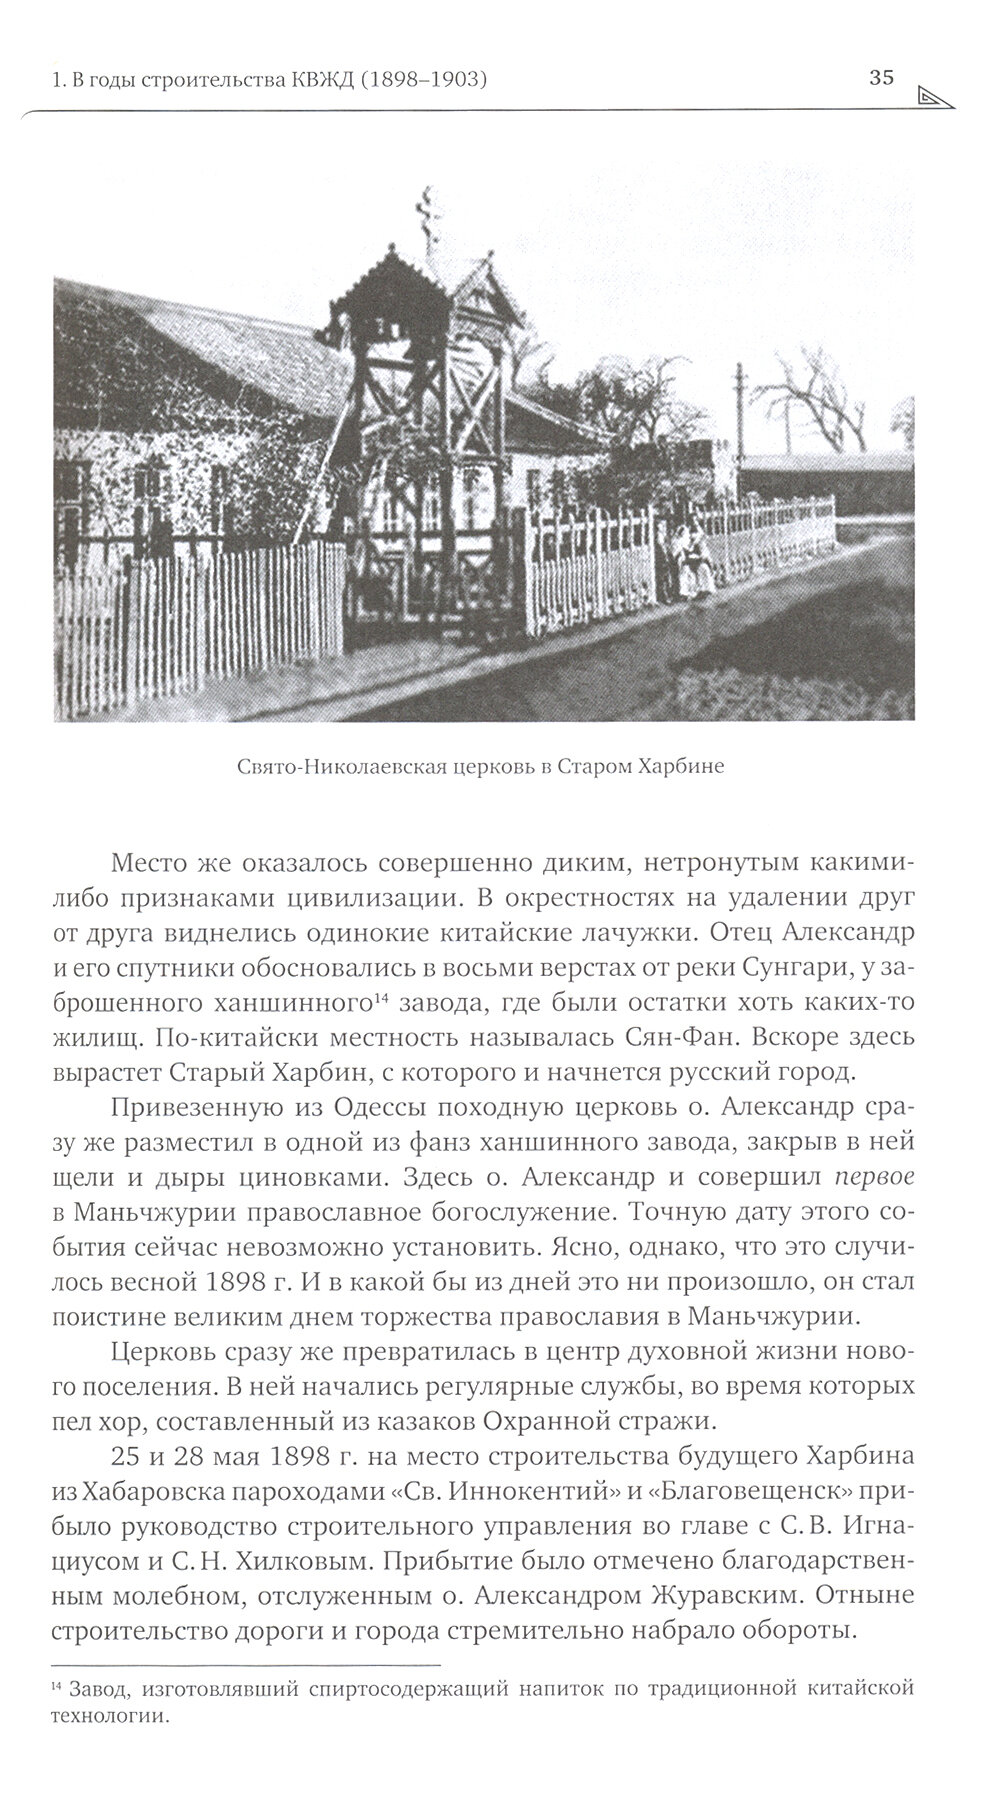 Православие в Маньчжурии (1898-1956). Очерки истории - фото №3